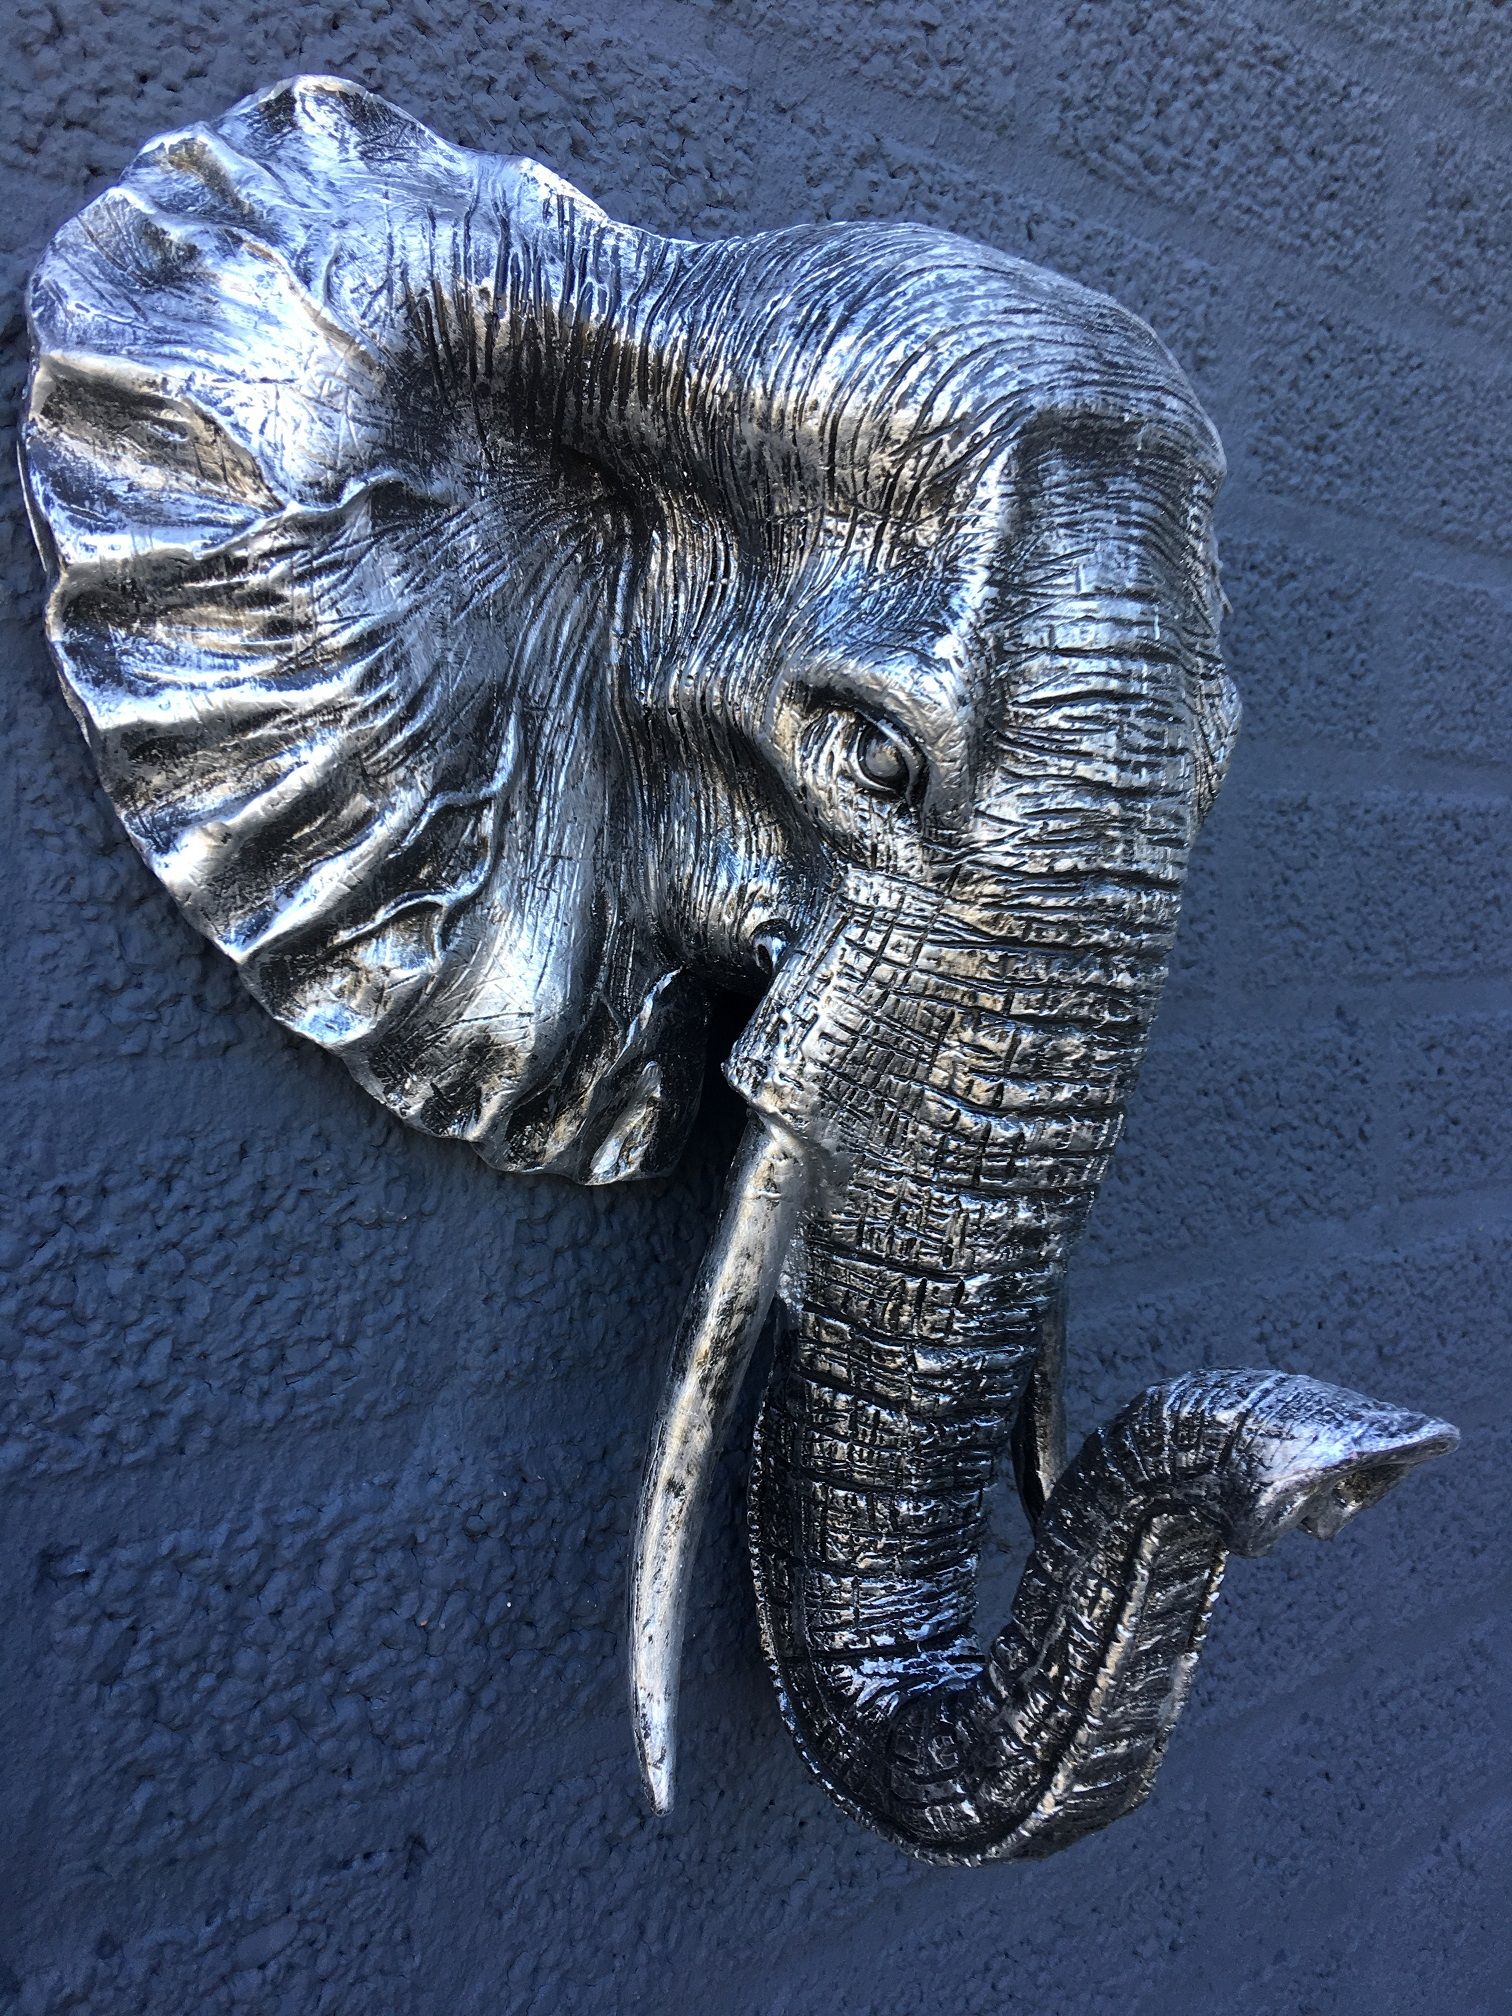 Mooie zwart-zilveren olifantenkop wandornament, prachtig!!